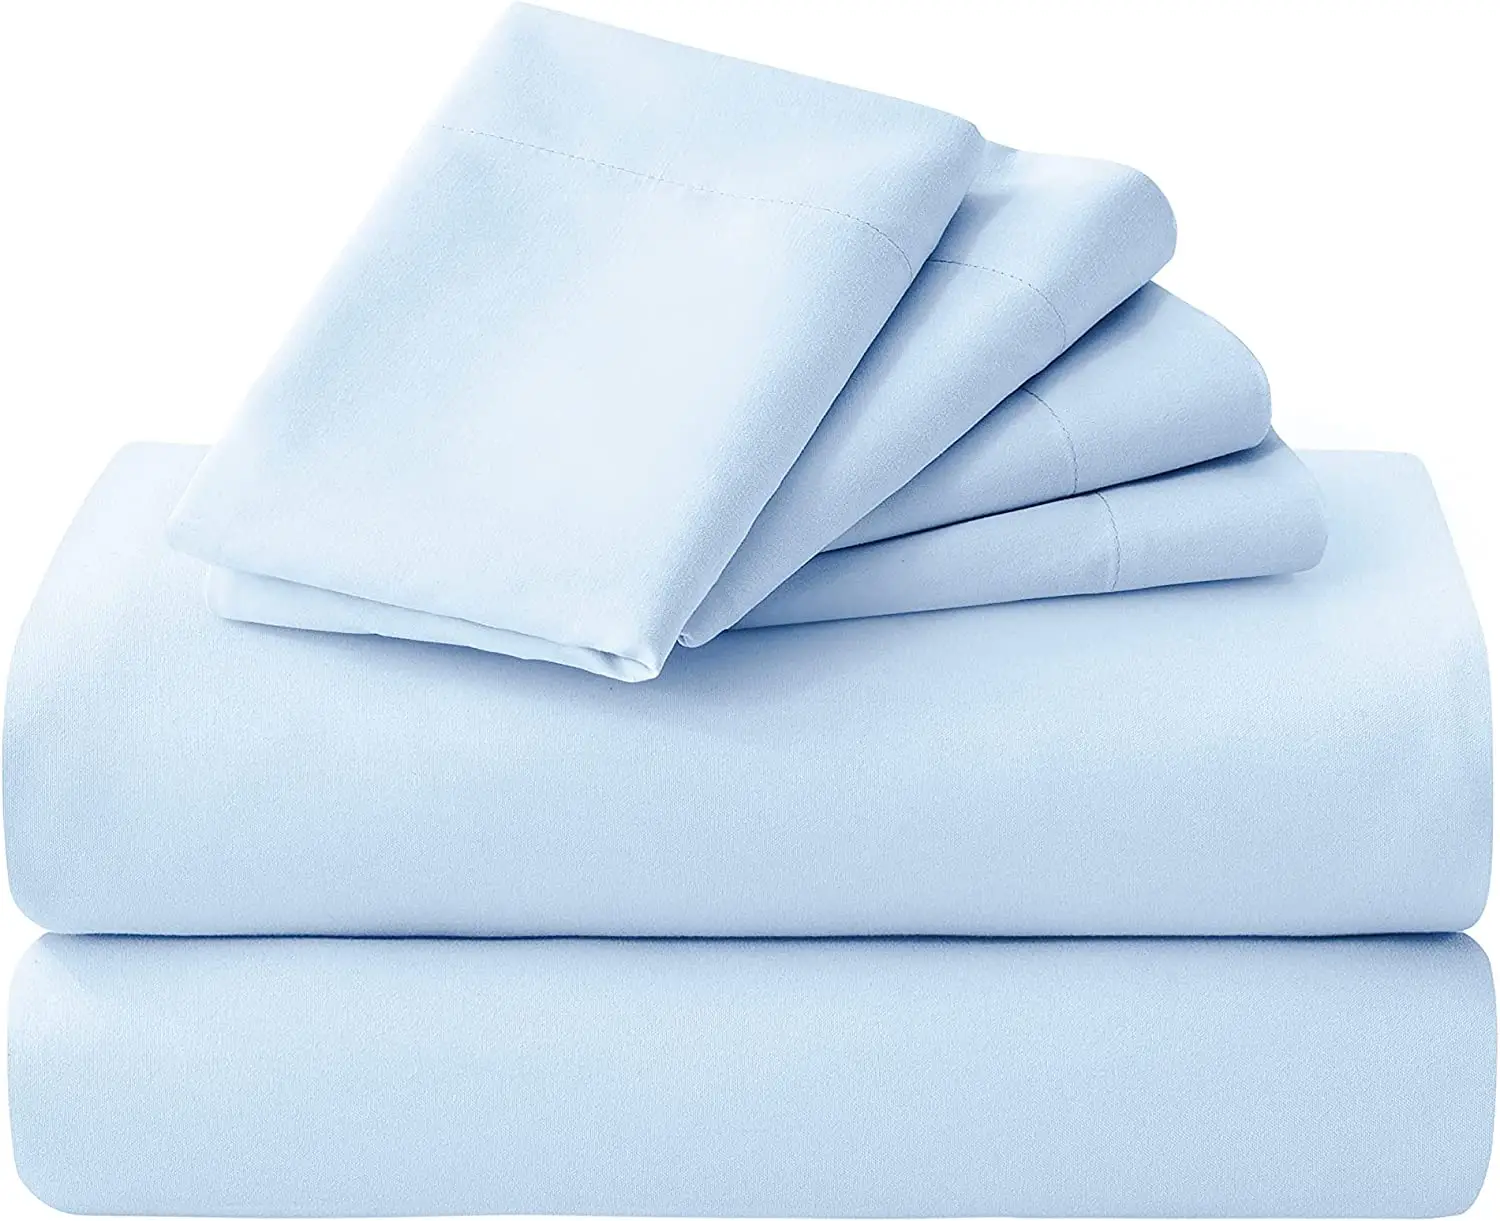 Directo de fábrica al por mayor 100% poliéster dormitorio funda nórdica moda varios patrones juego de sábanas